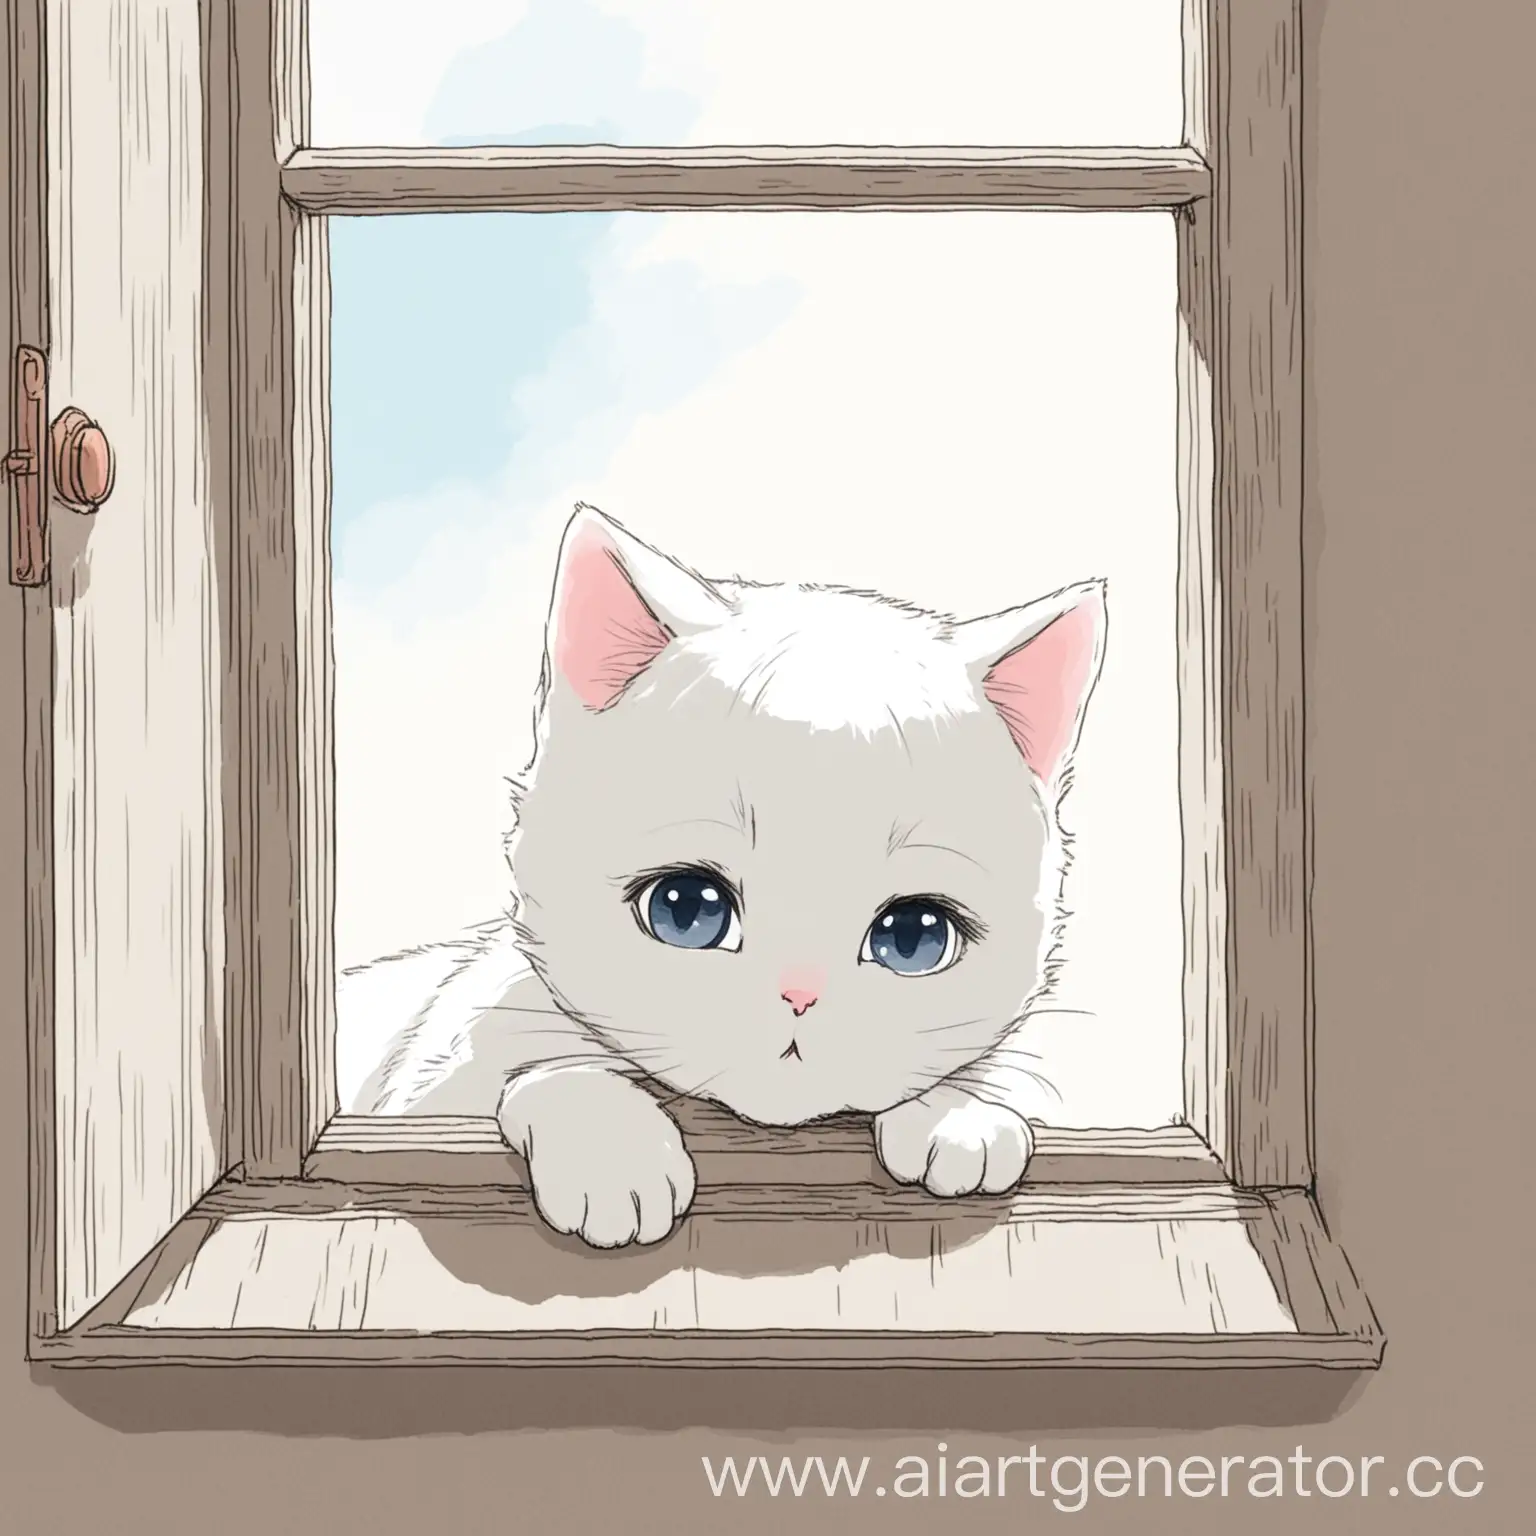 Нарисуй картинку, где белая кошечка выглядывает из окна и отправляет поцелуйчик